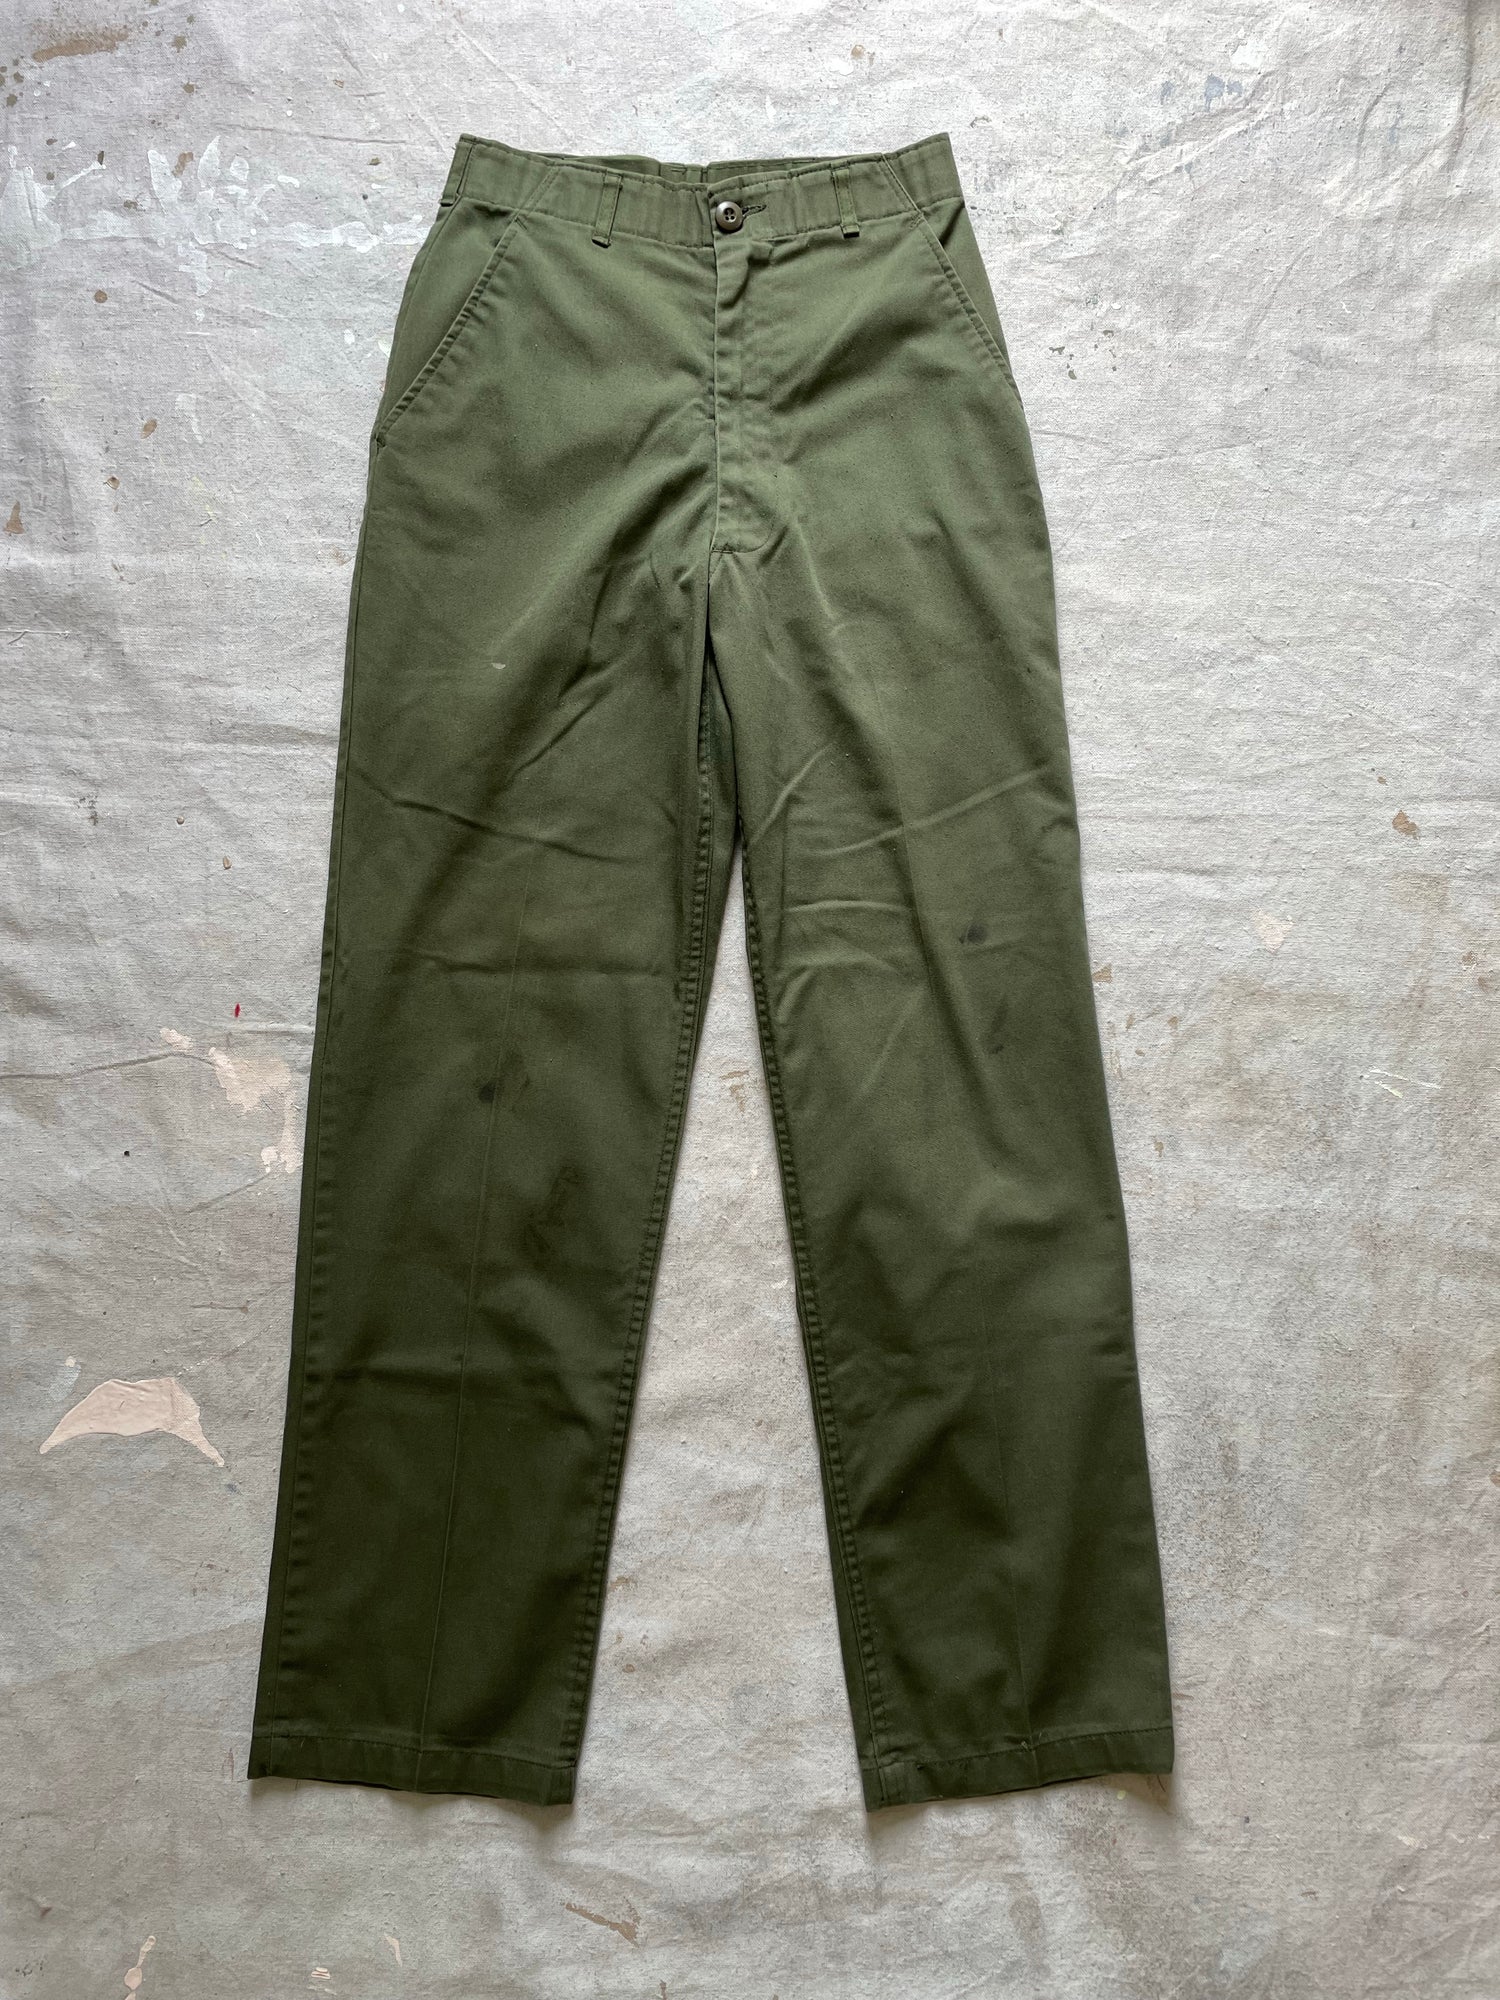 U.S. Military - OG-507 Baker Pants